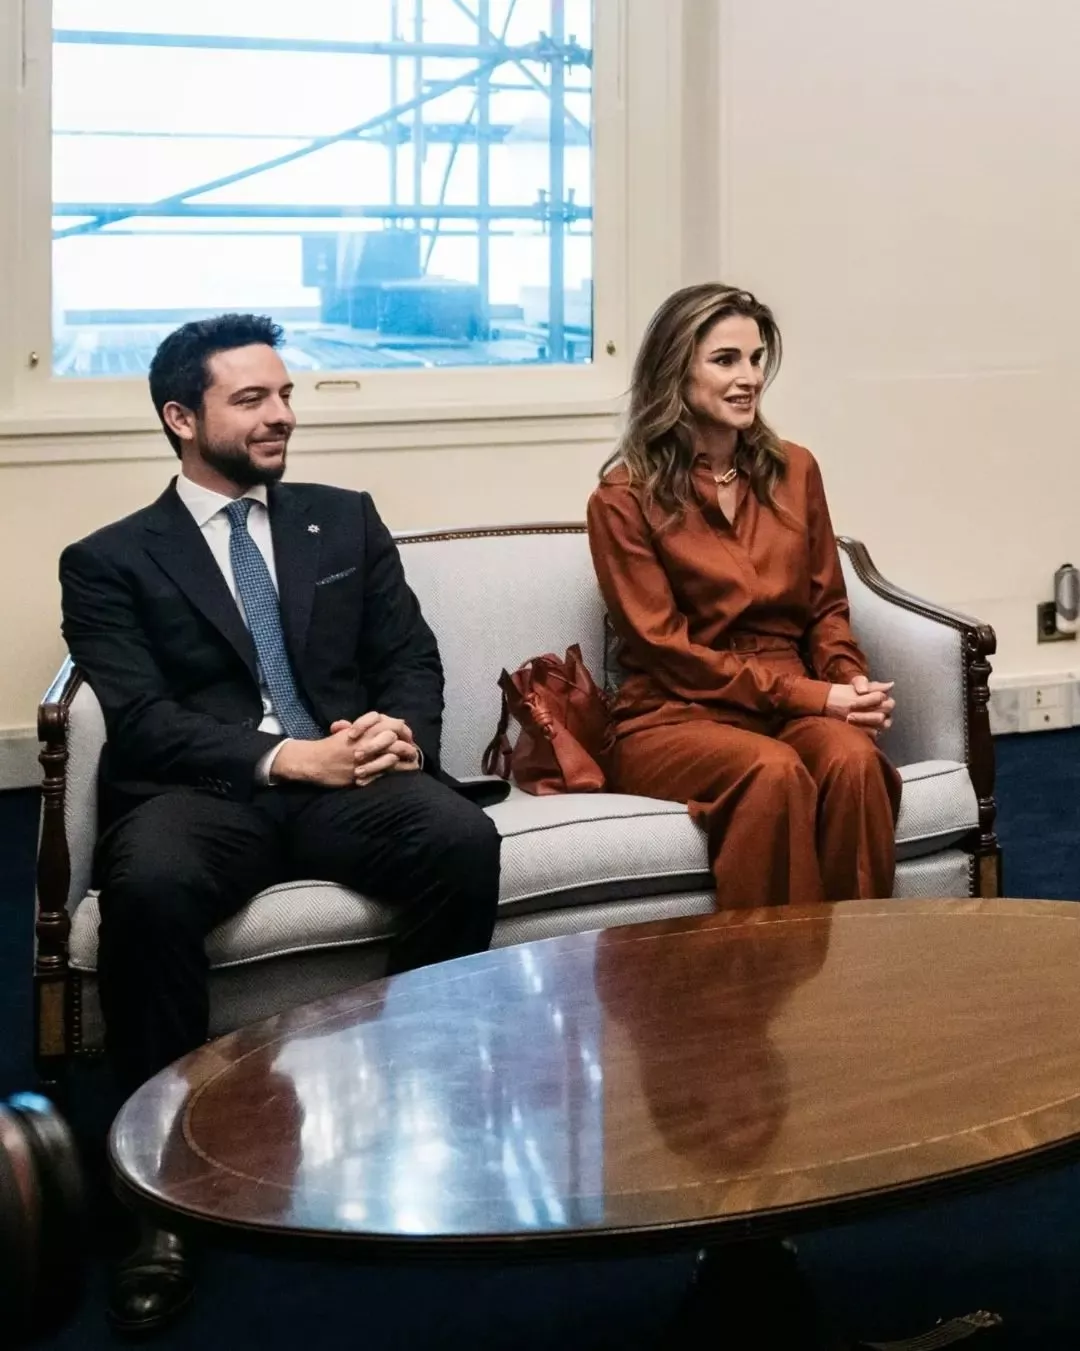 بأناقتها المعهودة، الملكة رانيا تنافس بإطلالاتها جيل بايدن